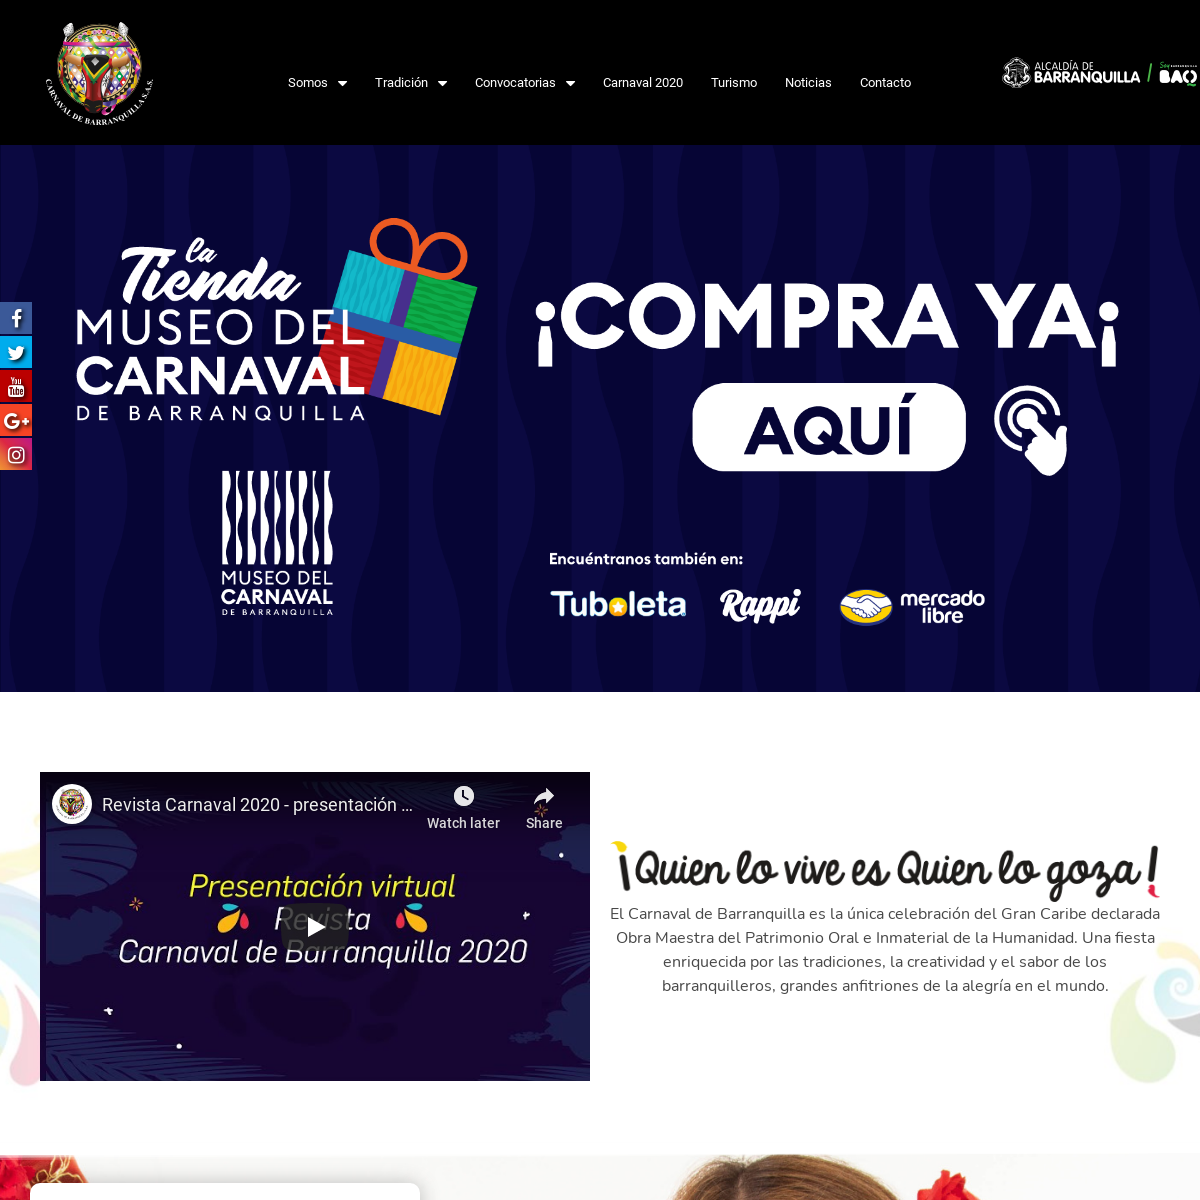 A complete backup of carnavaldebarranquilla.org